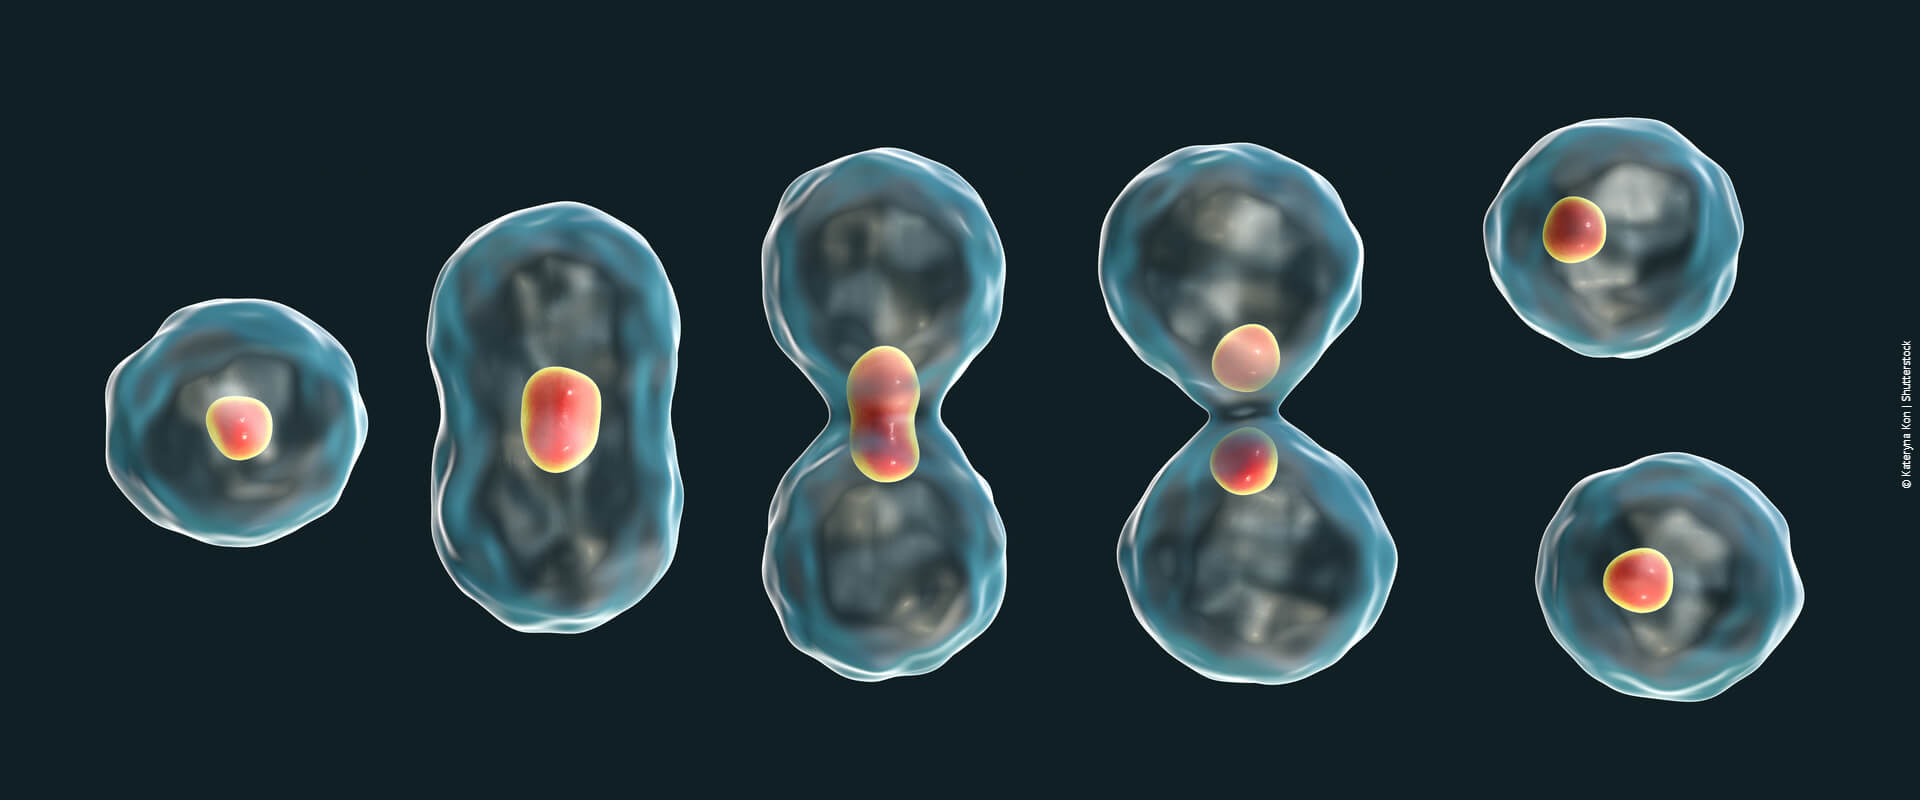 Mitose e meiose: tudo sobre os processos de divisão celular!